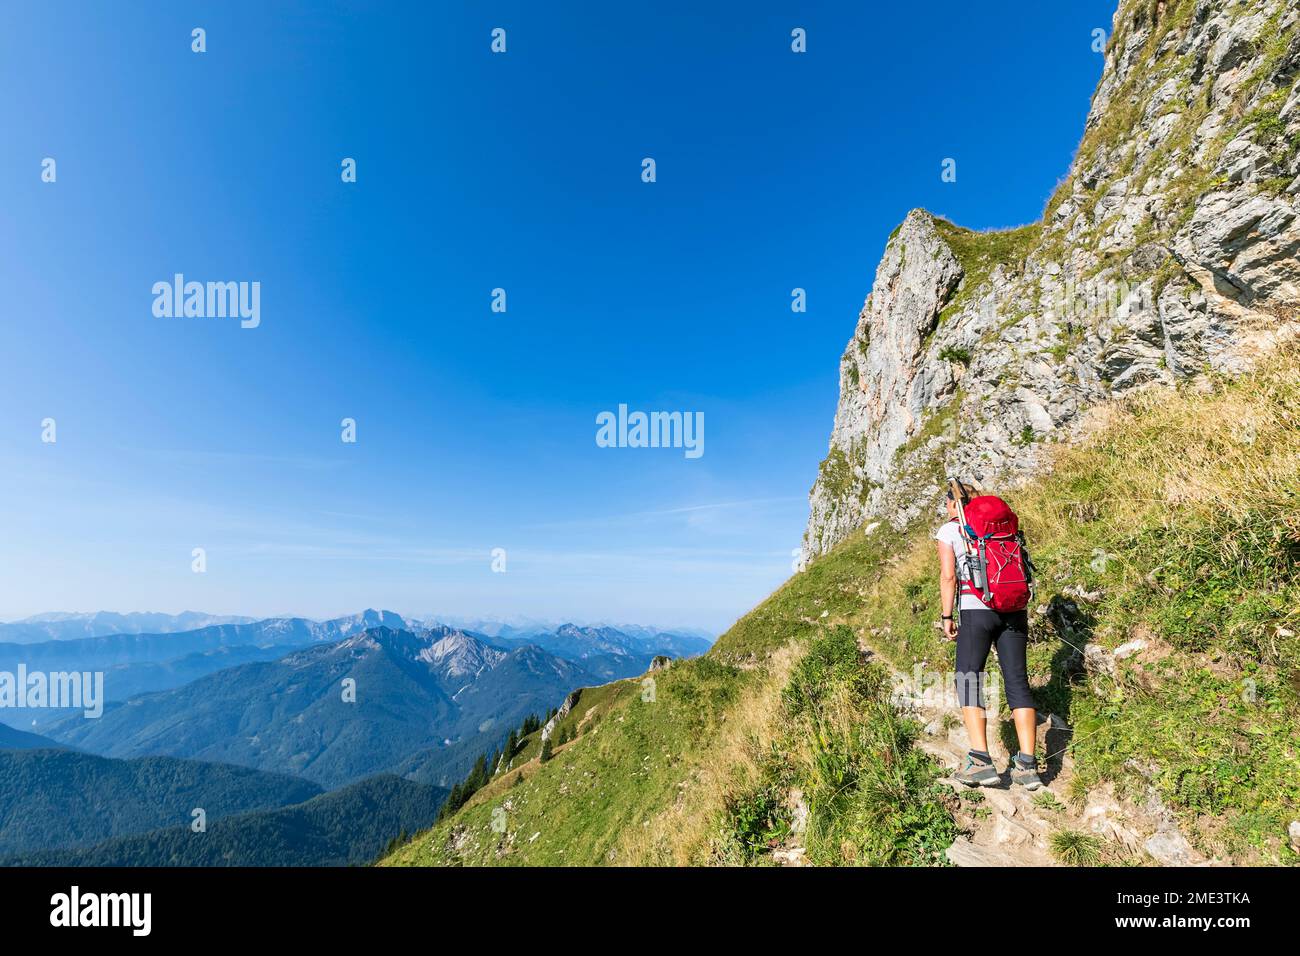 Germania, Baviera, escursionista femminile sulla strada per la cima del monte Taubenstein Foto Stock